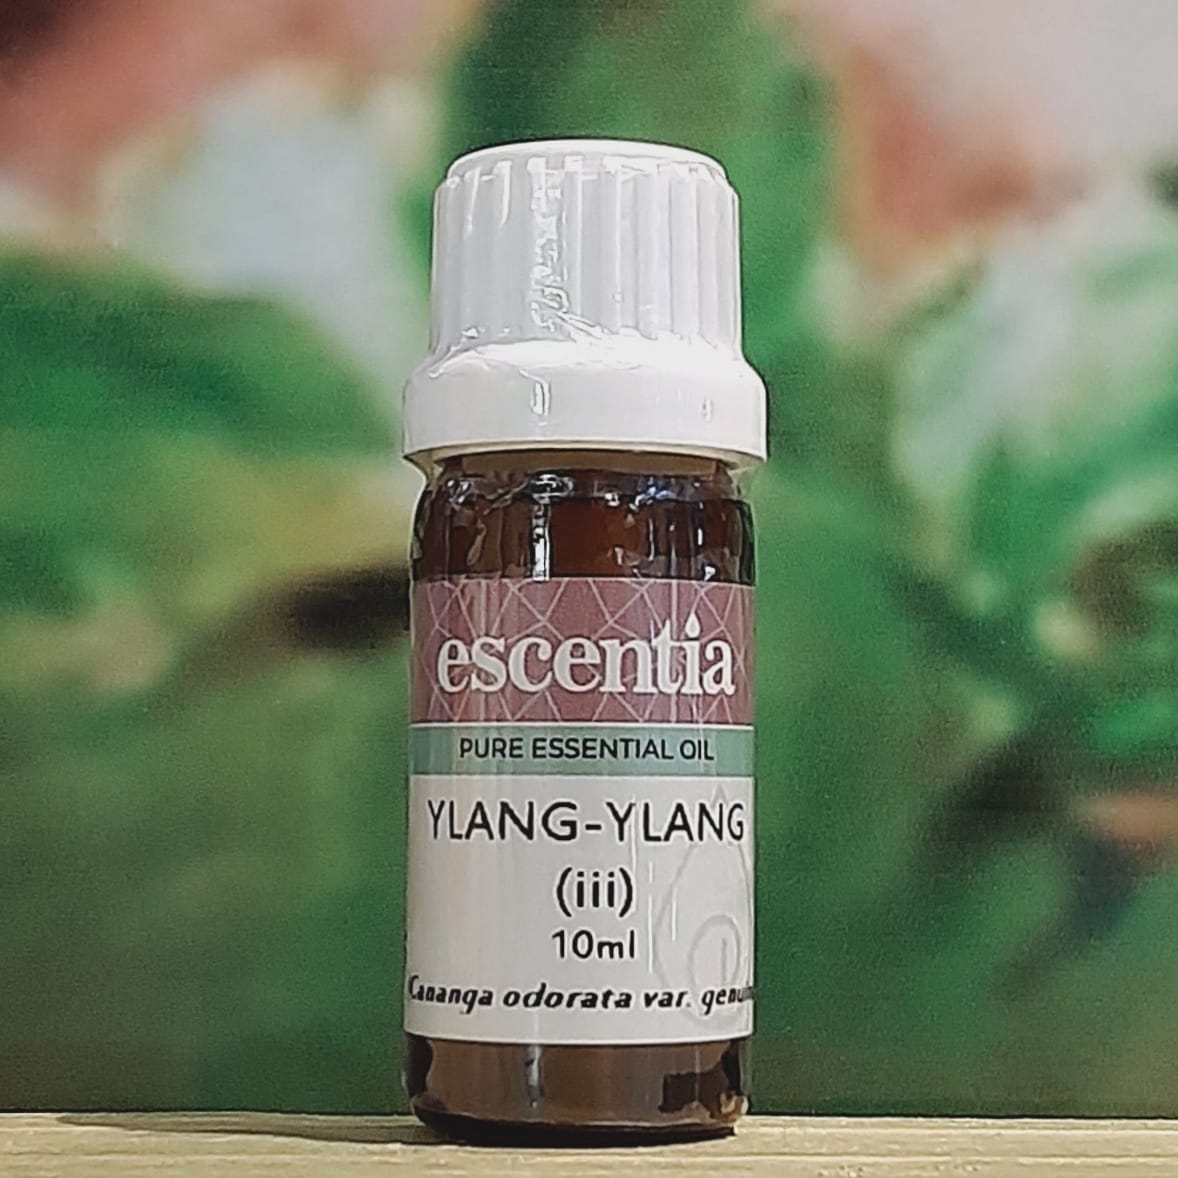 Escentia Ylang-Ylang Essential Oil 10ml